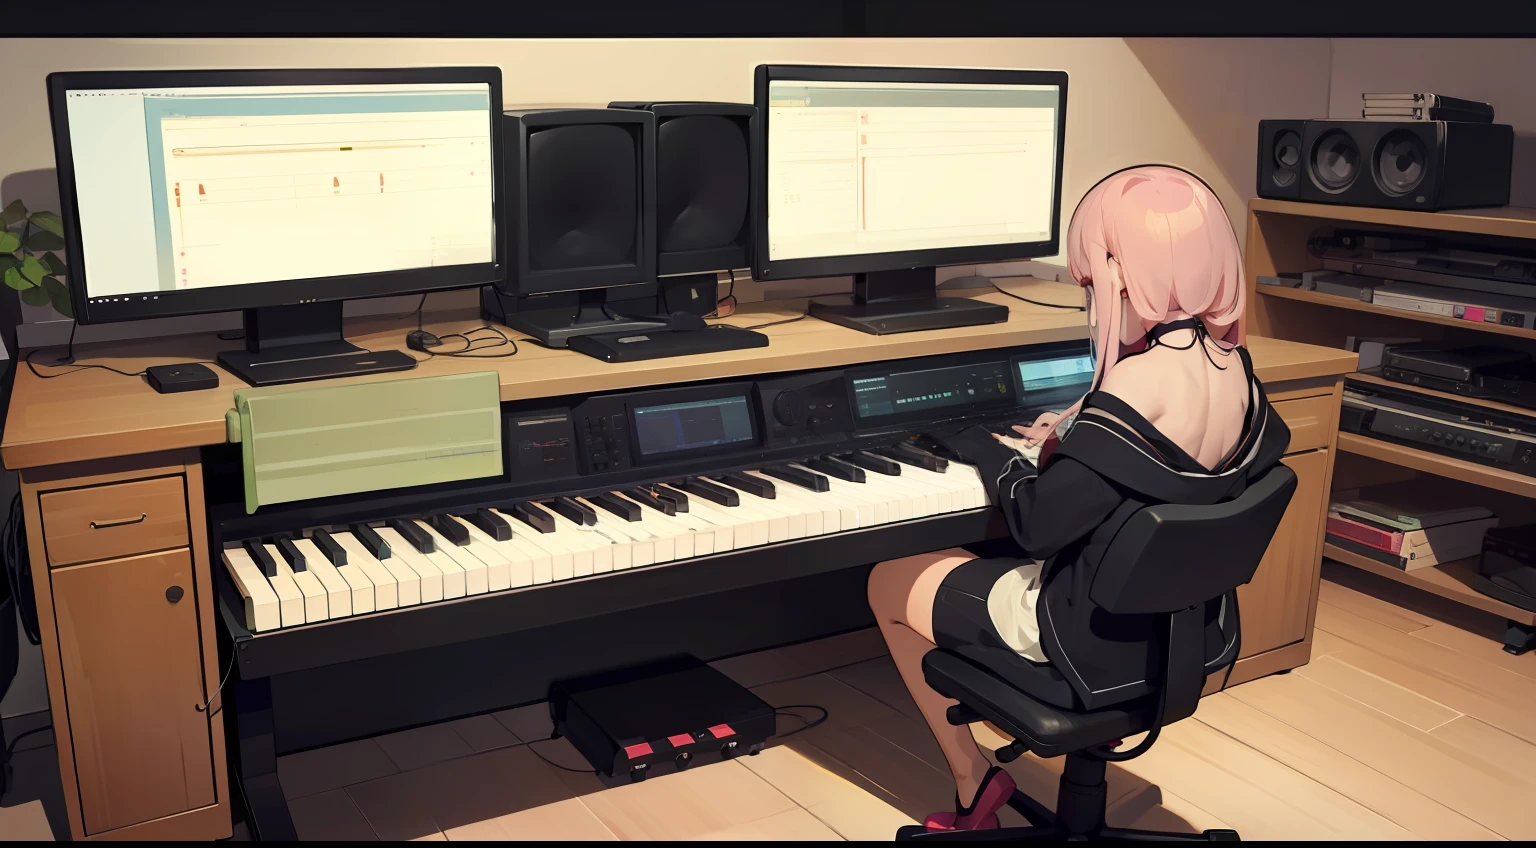 غرفة الإنتاج الموسيقي　مكتب الكمبيوتر　ملاحظة جهاز الكمبيوتر　مراقبة المتحدث　البيانو الالكتروني　الباستيل　فتاة مع ظهرها